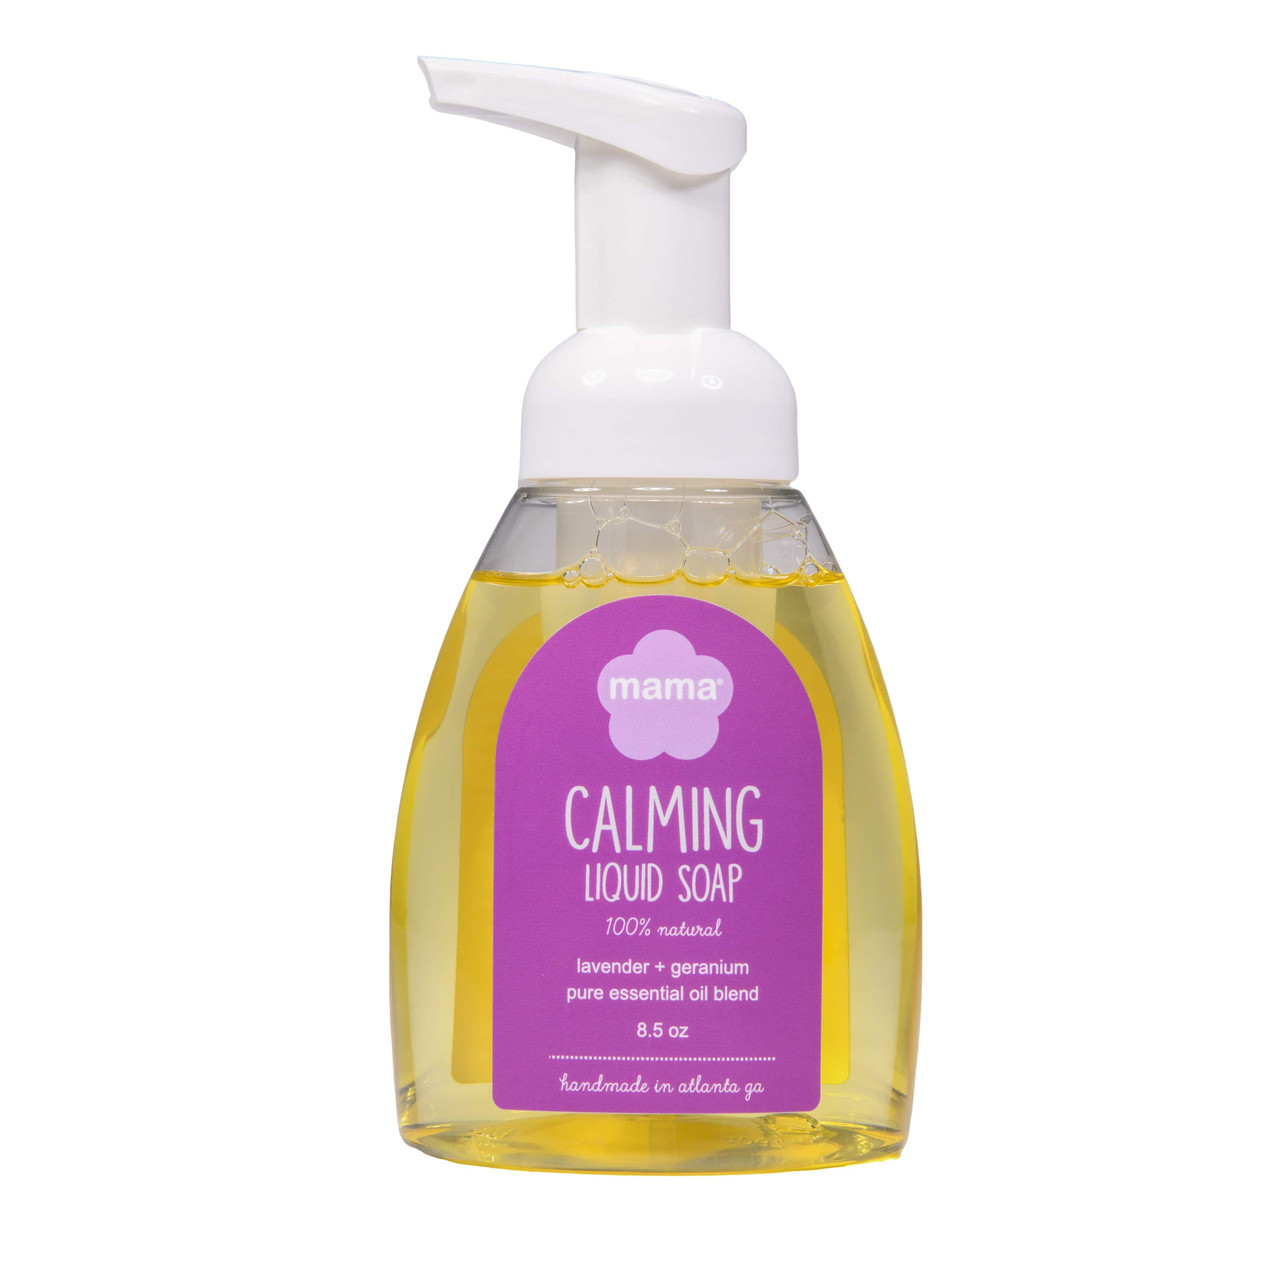 Calming (Lavender + Geranium) Liquid Soap | Mama Bath + Body